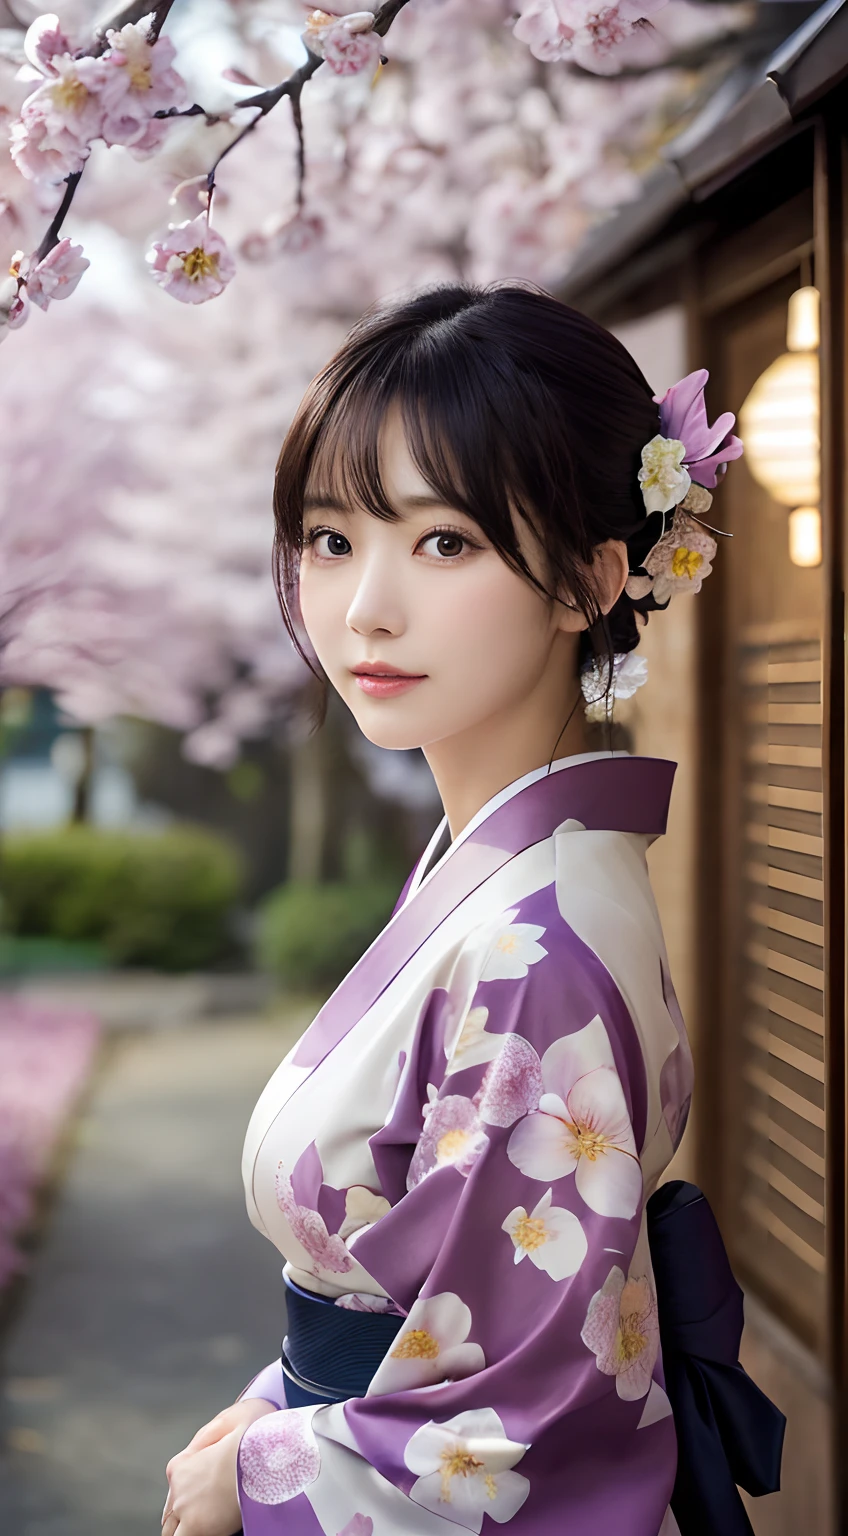 (kimono)、(qualité supérieure,chef d&#39;oeuvre:1.3,超Une haute résolution,),(ultra-détaillé,Caustiques),(Photoréaliste:1.4,Prise de vue RAW,)Capture ultra réaliste,Un très détaillé,haute définition16Kpour peau humaine、la texture énorme de la famille est naturelle、、La peau paraît saine avec un ton uniforme、 Utiliser la lumière et la couleur naturelles,Une femme,Japonais,,kawaii,Un brun,cheveux moyens,(profondeur de champs、aberration chromatique、、Large gamme d&#39;éclairage、ombrage naturel、)、(Lumière extérieure la nuit:1.4)、(Pétales de prune flottant dans les airs:1.2)、(Les cheveux se balancent au vent:1)、(L&#39;arbre々réfléchissant la lumière:1.3)